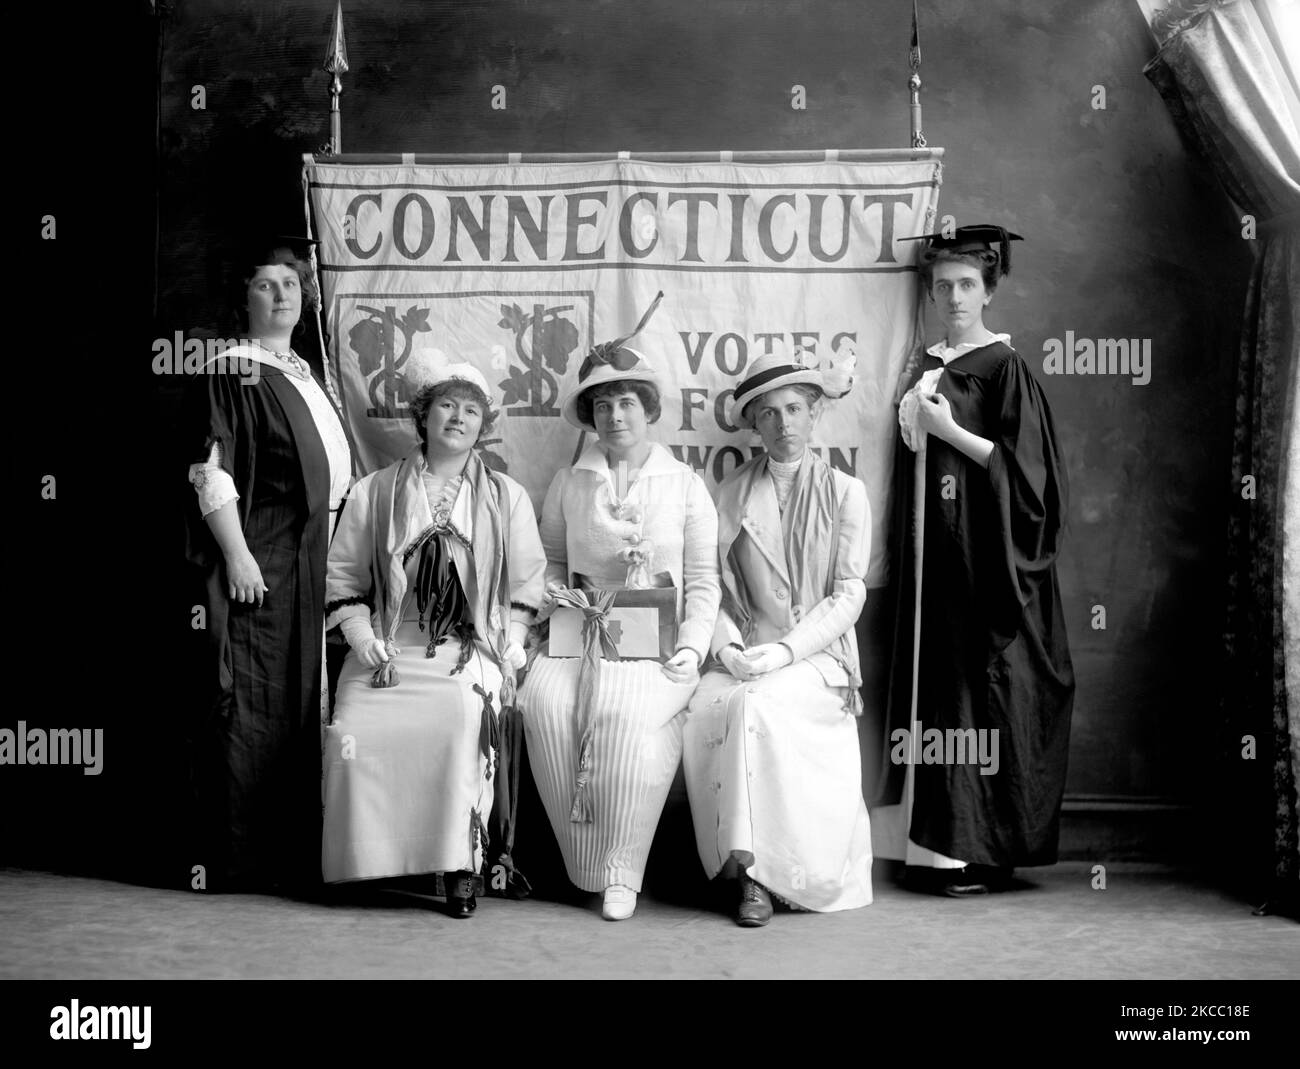 Connecticut Woman suffrage Association foto di gruppo. Foto Stock